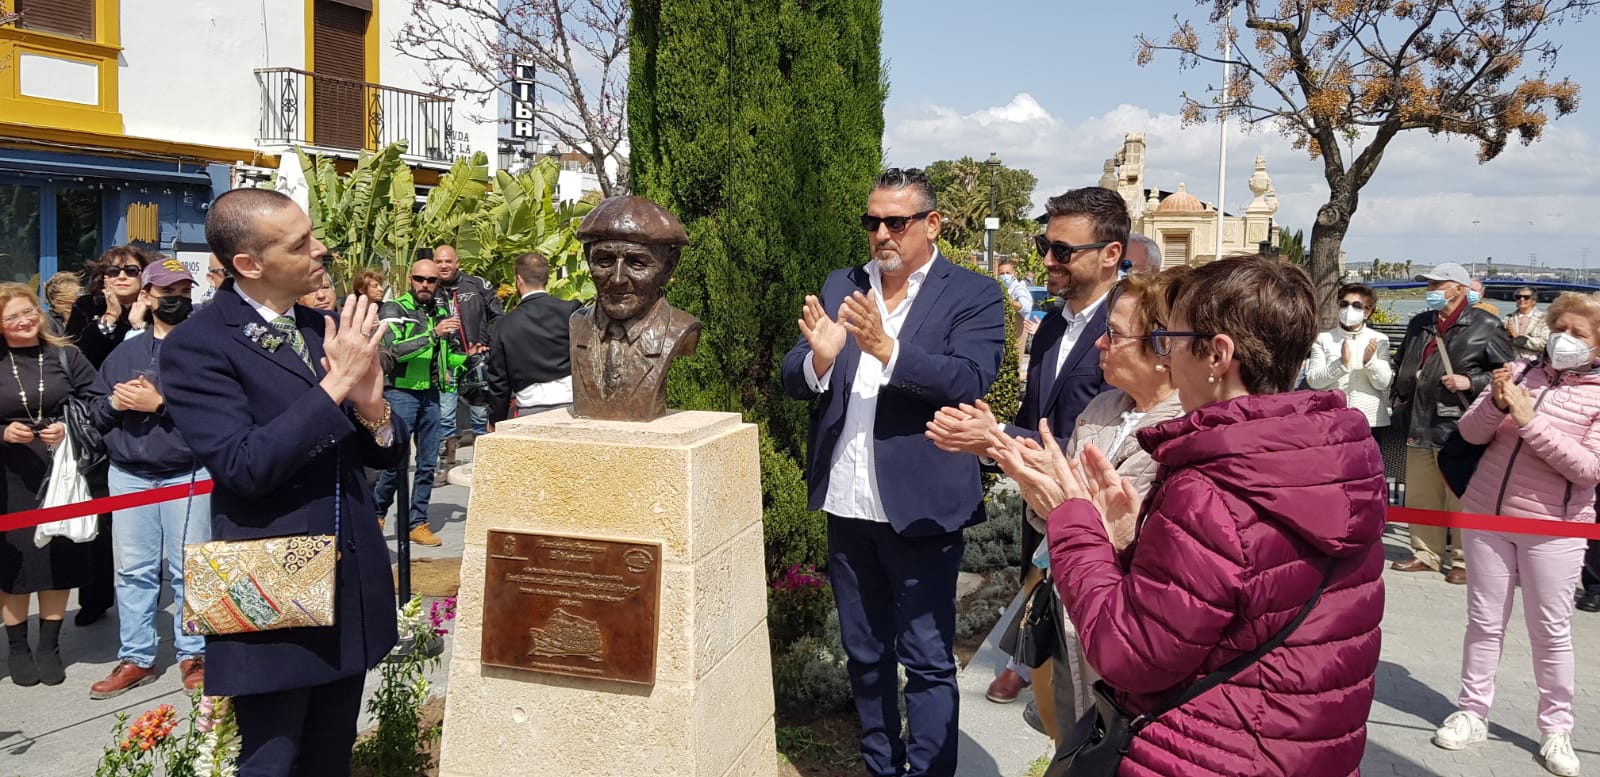 Inauguración del busto a Pepe el del Vapor en la avenida de la Bajamar en marzo.